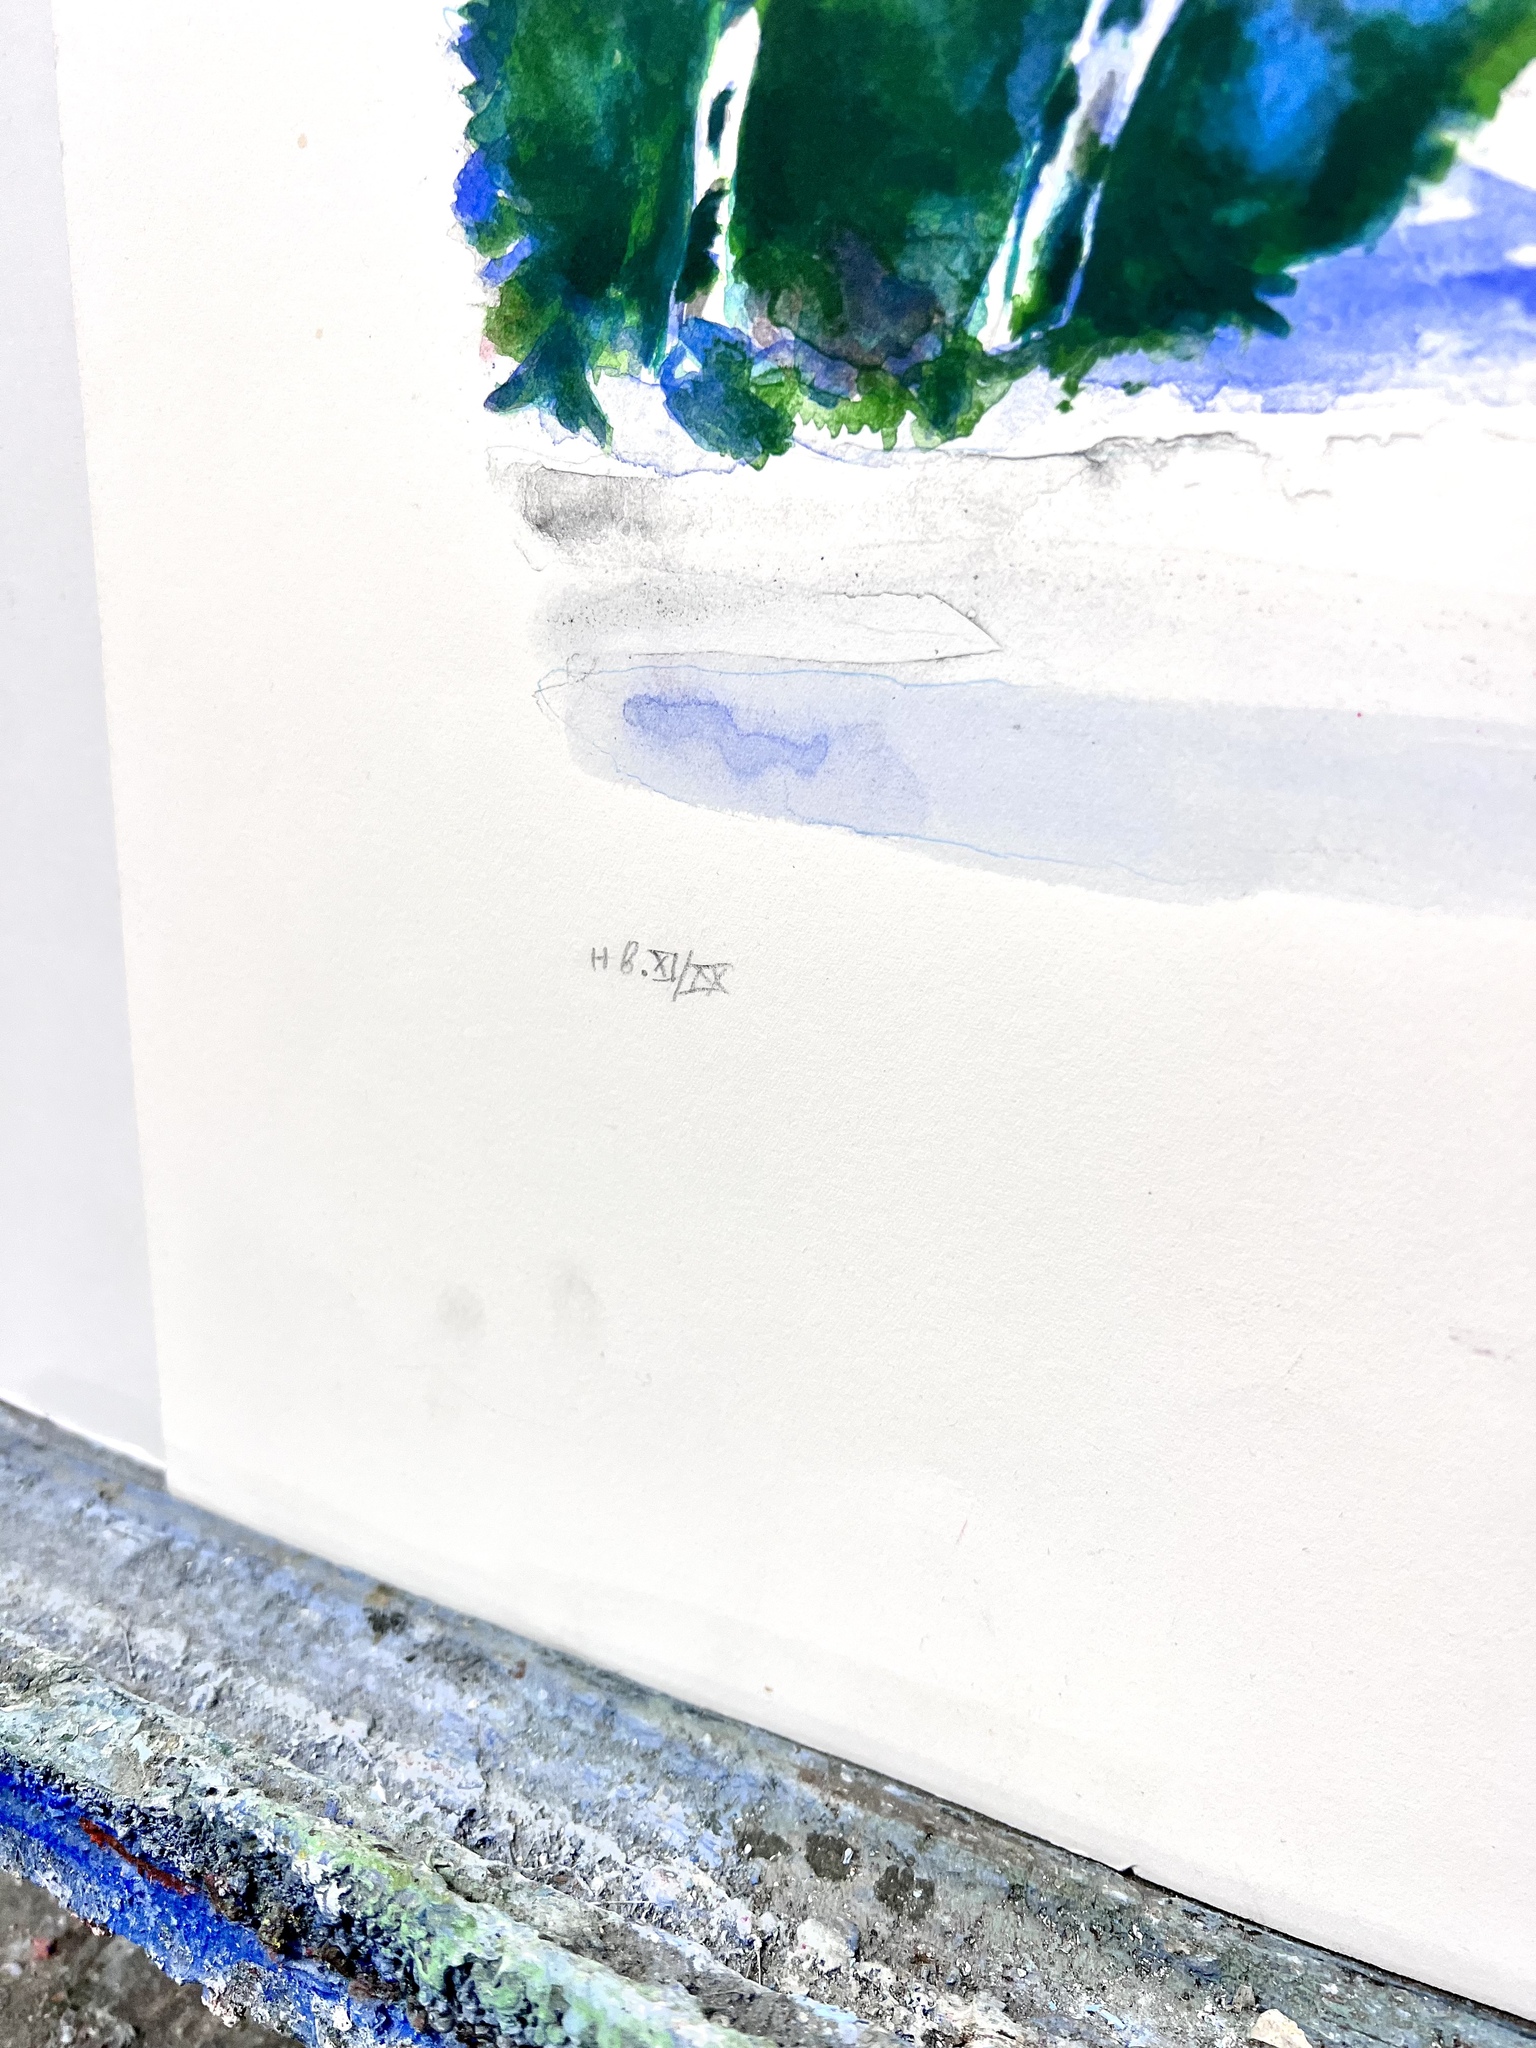 Evy Låås, färglitografi, signerad "Vinteräng", bladstorlek 74 x 60 cm.